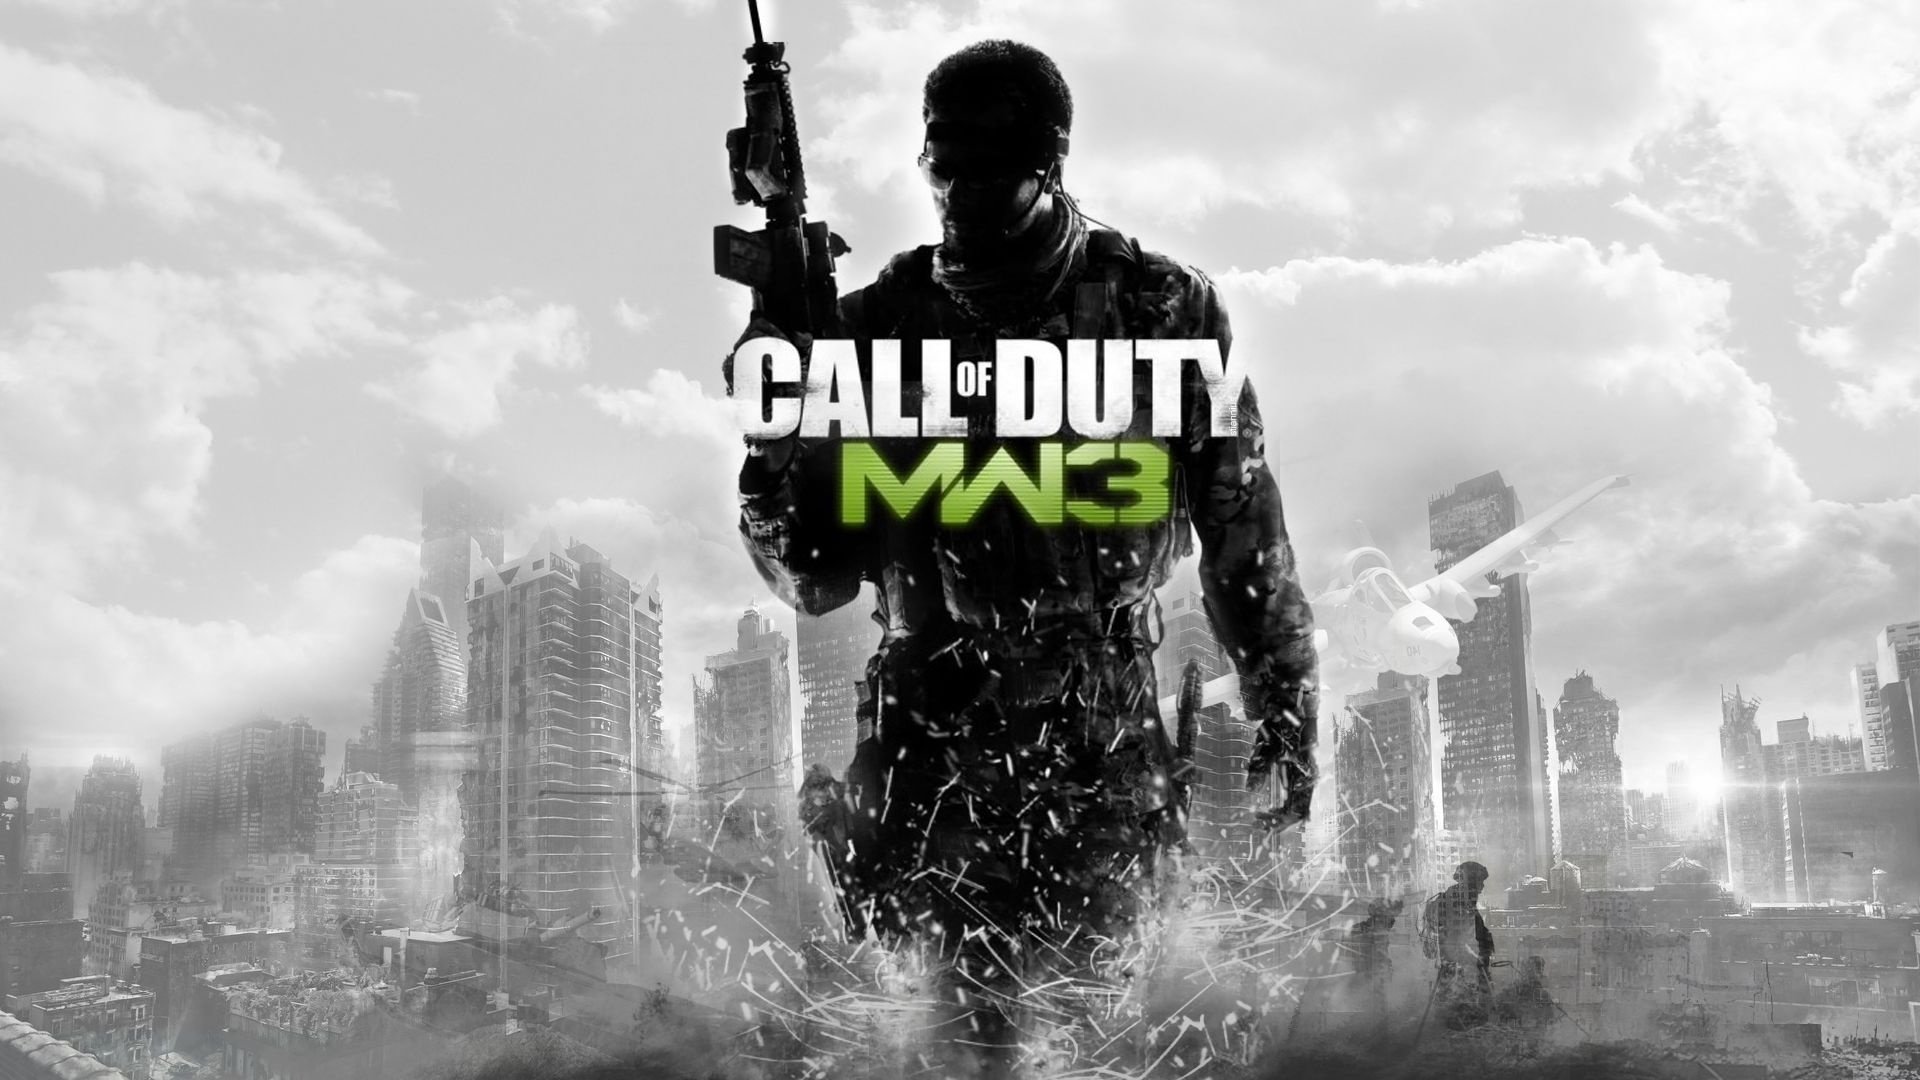 Call Of Duty Modern Warfare 3 Mw3 Wallpapers Hd For Desktop